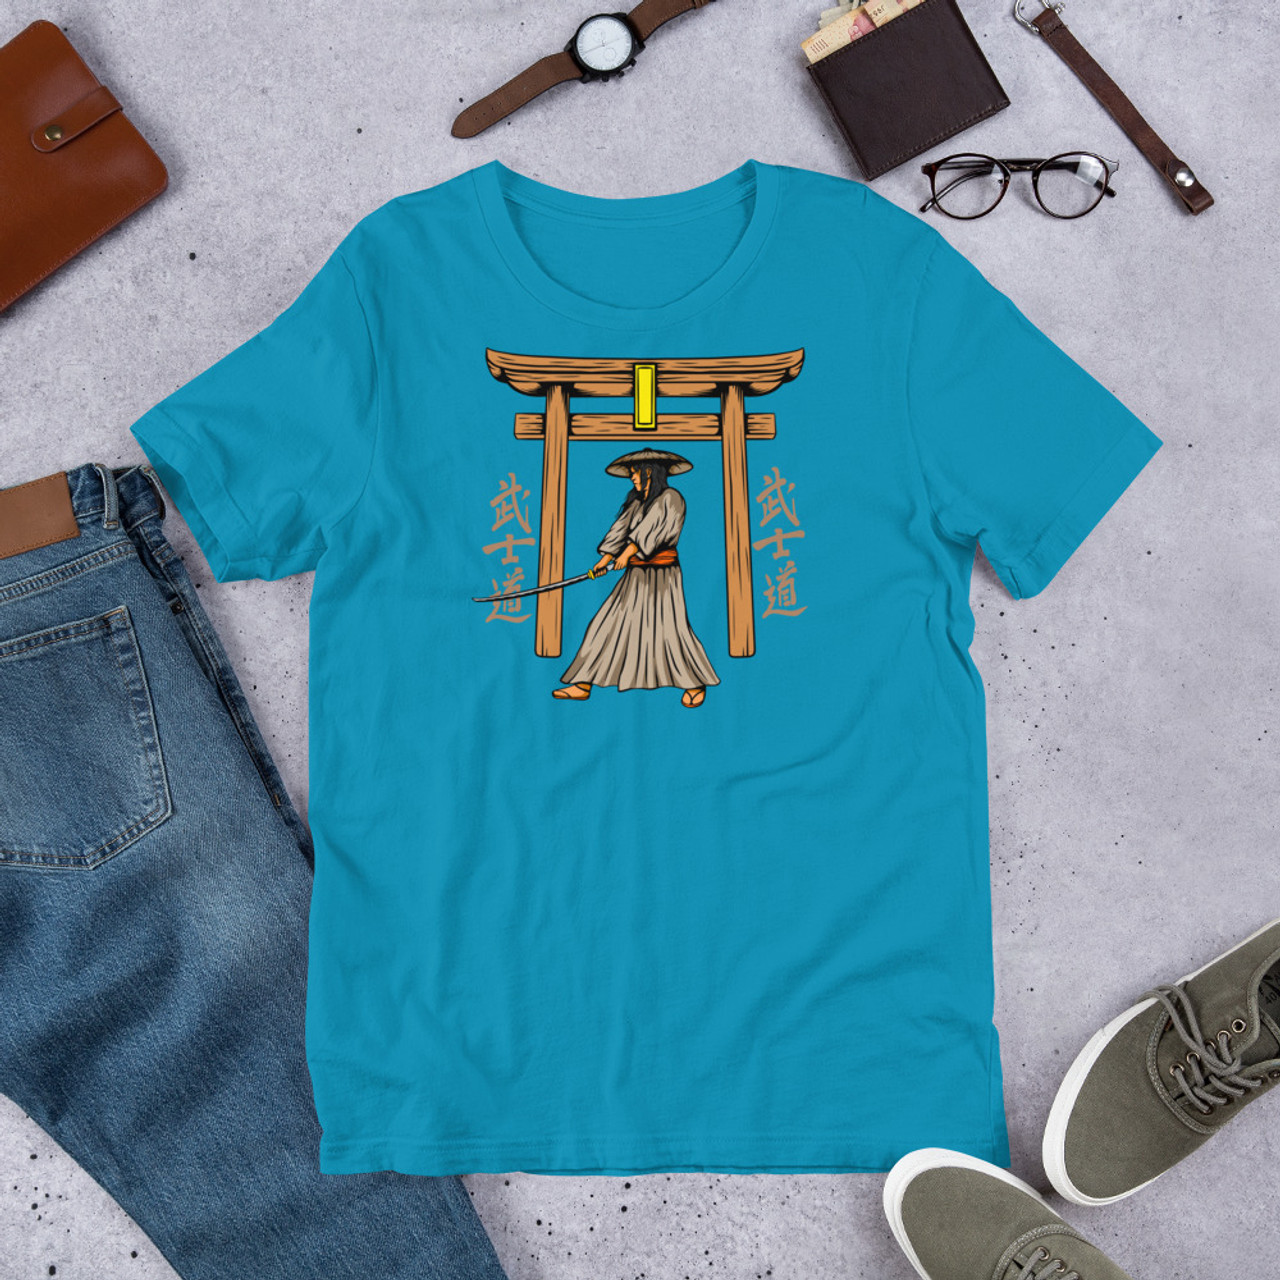 Aqua T-Shirt - Bella + Canvas 3001 Samurai 10